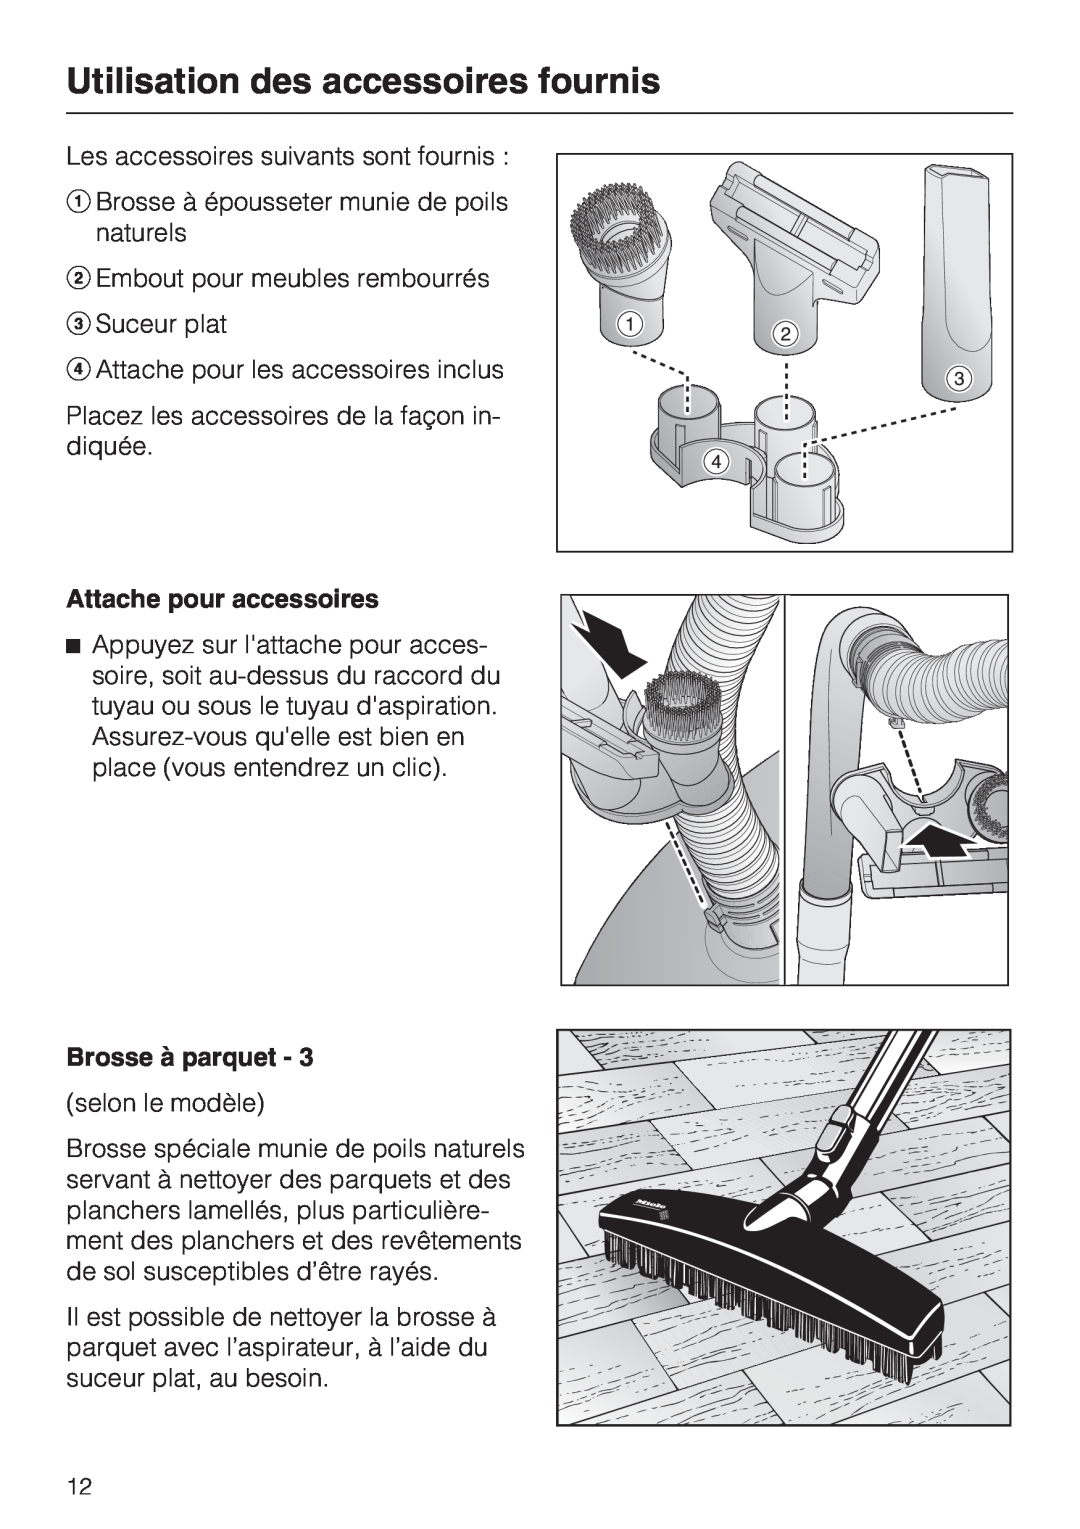 Miele S 2001 manual Utilisation des accessoires fournis, Attache pour accessoires, Brosse à parquet 